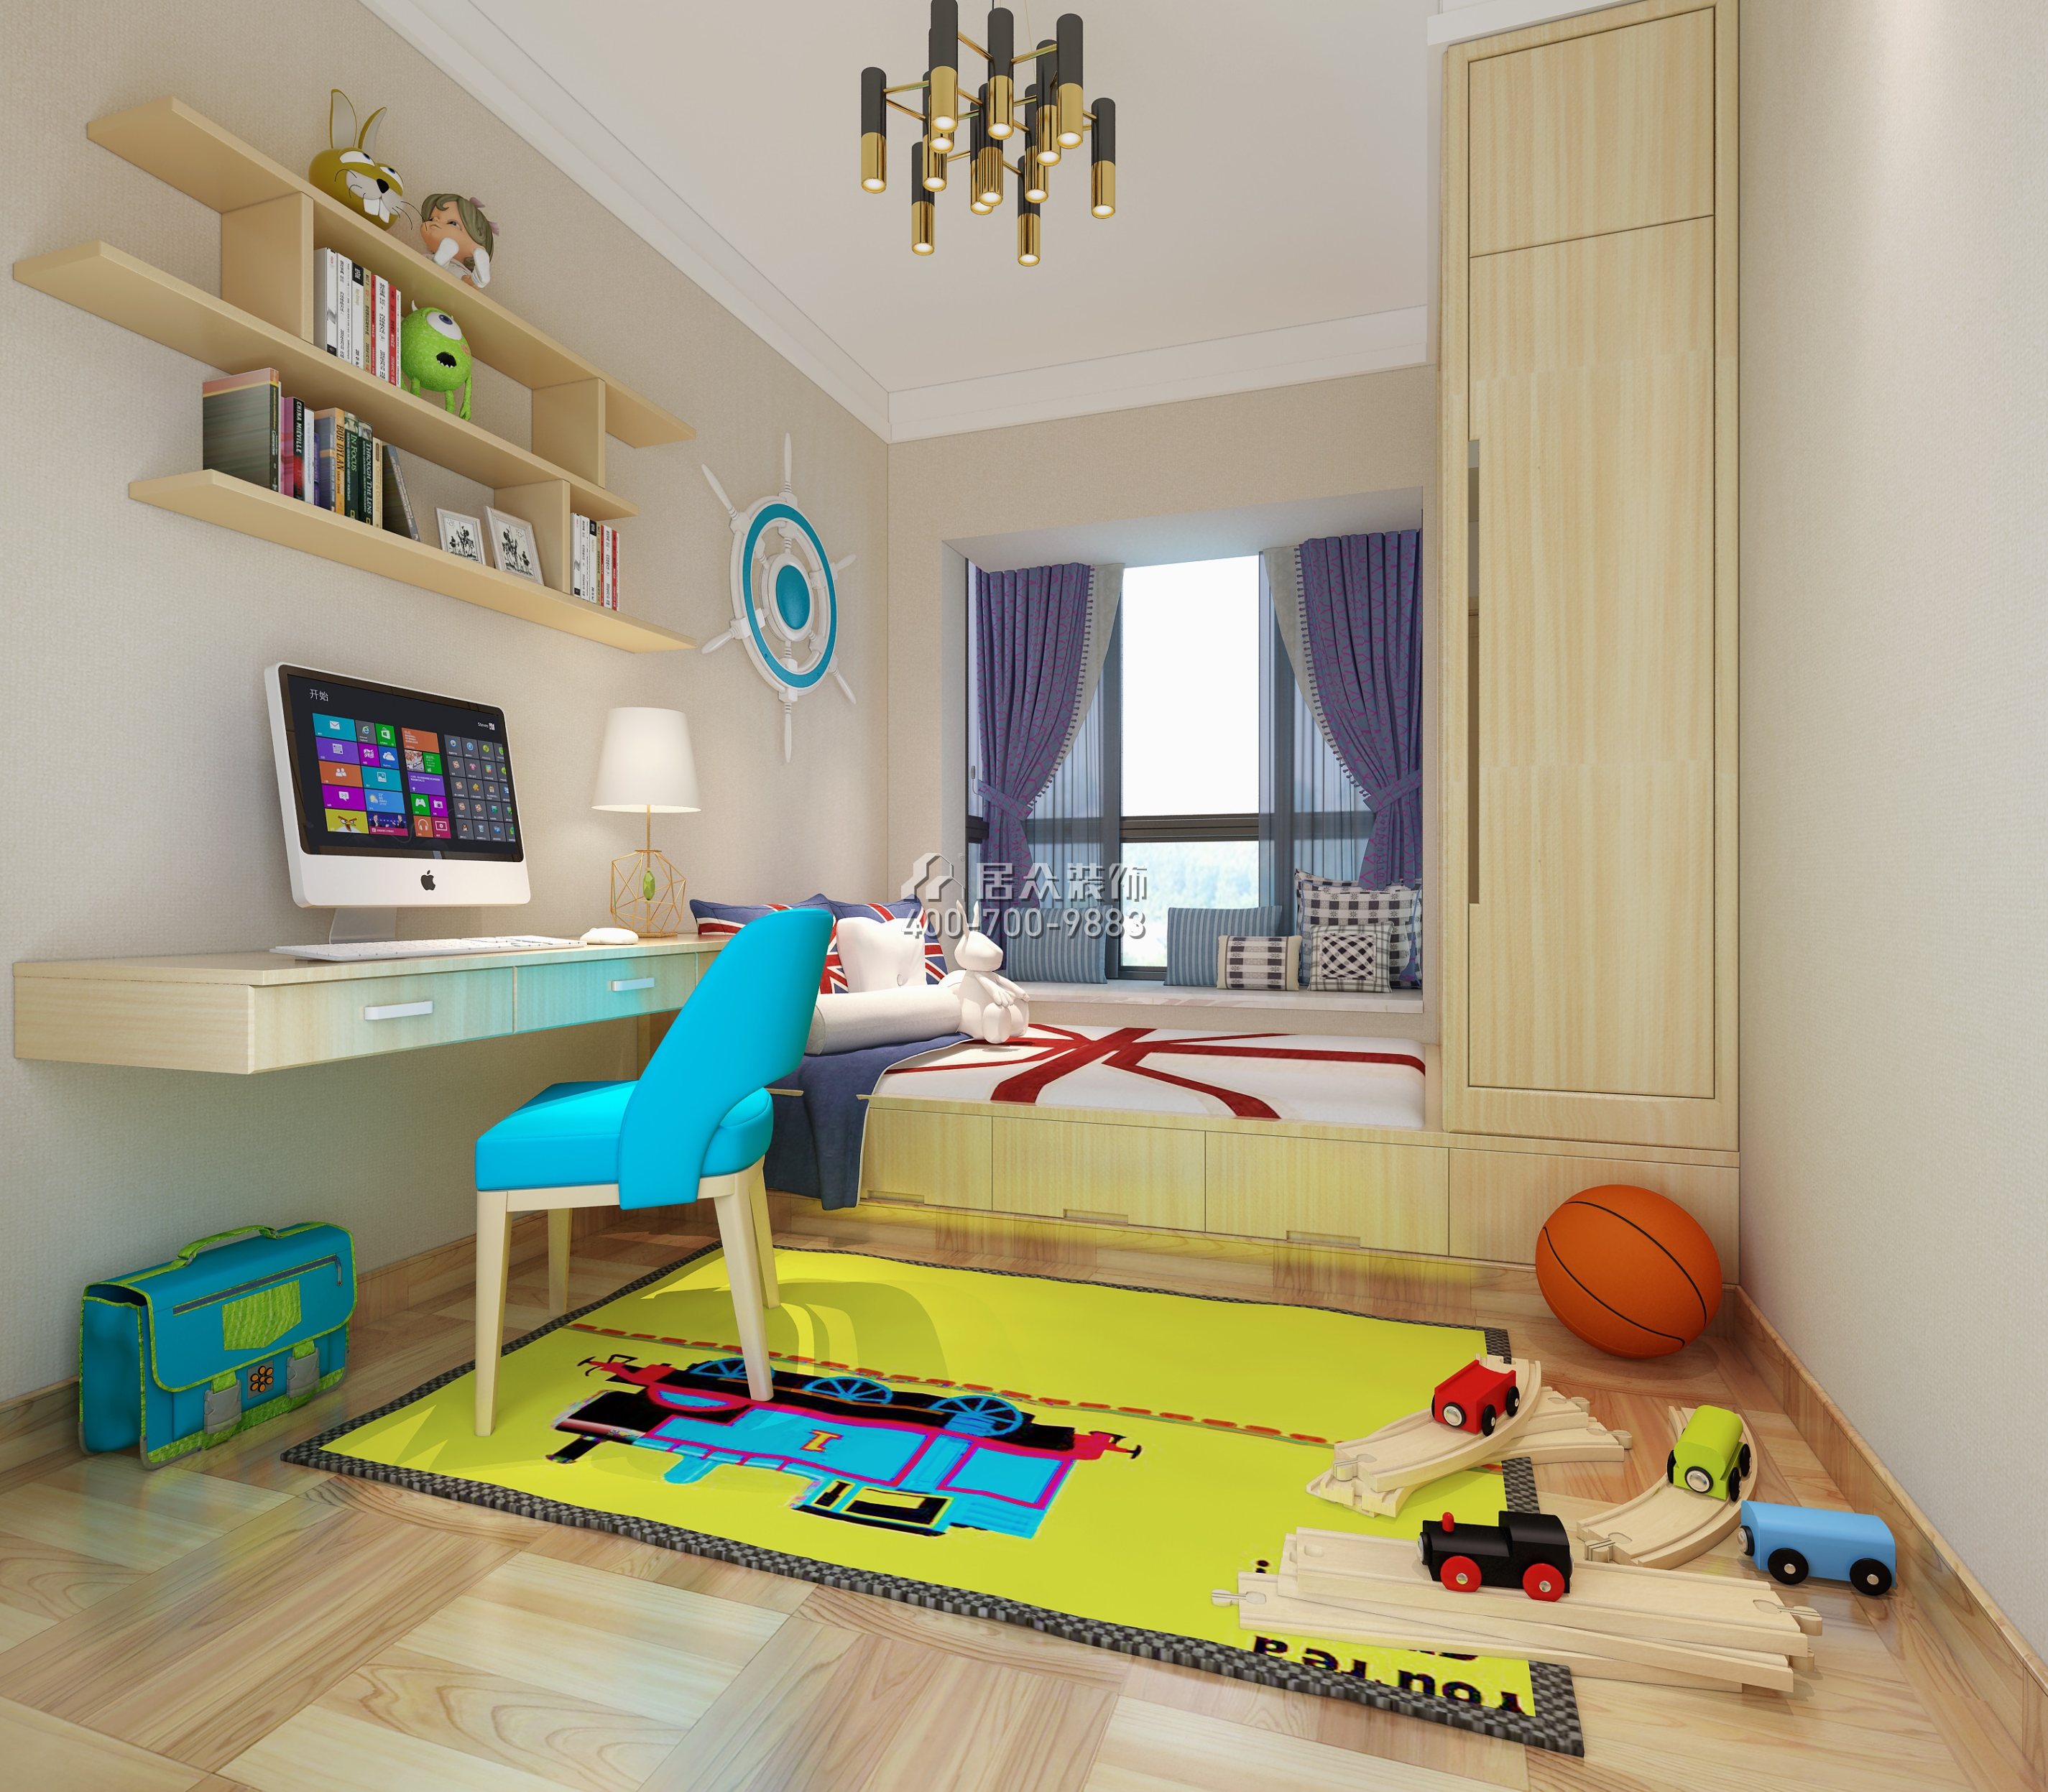 金域中央250平方米北歐風格復式戶型兒童房裝修效果圖